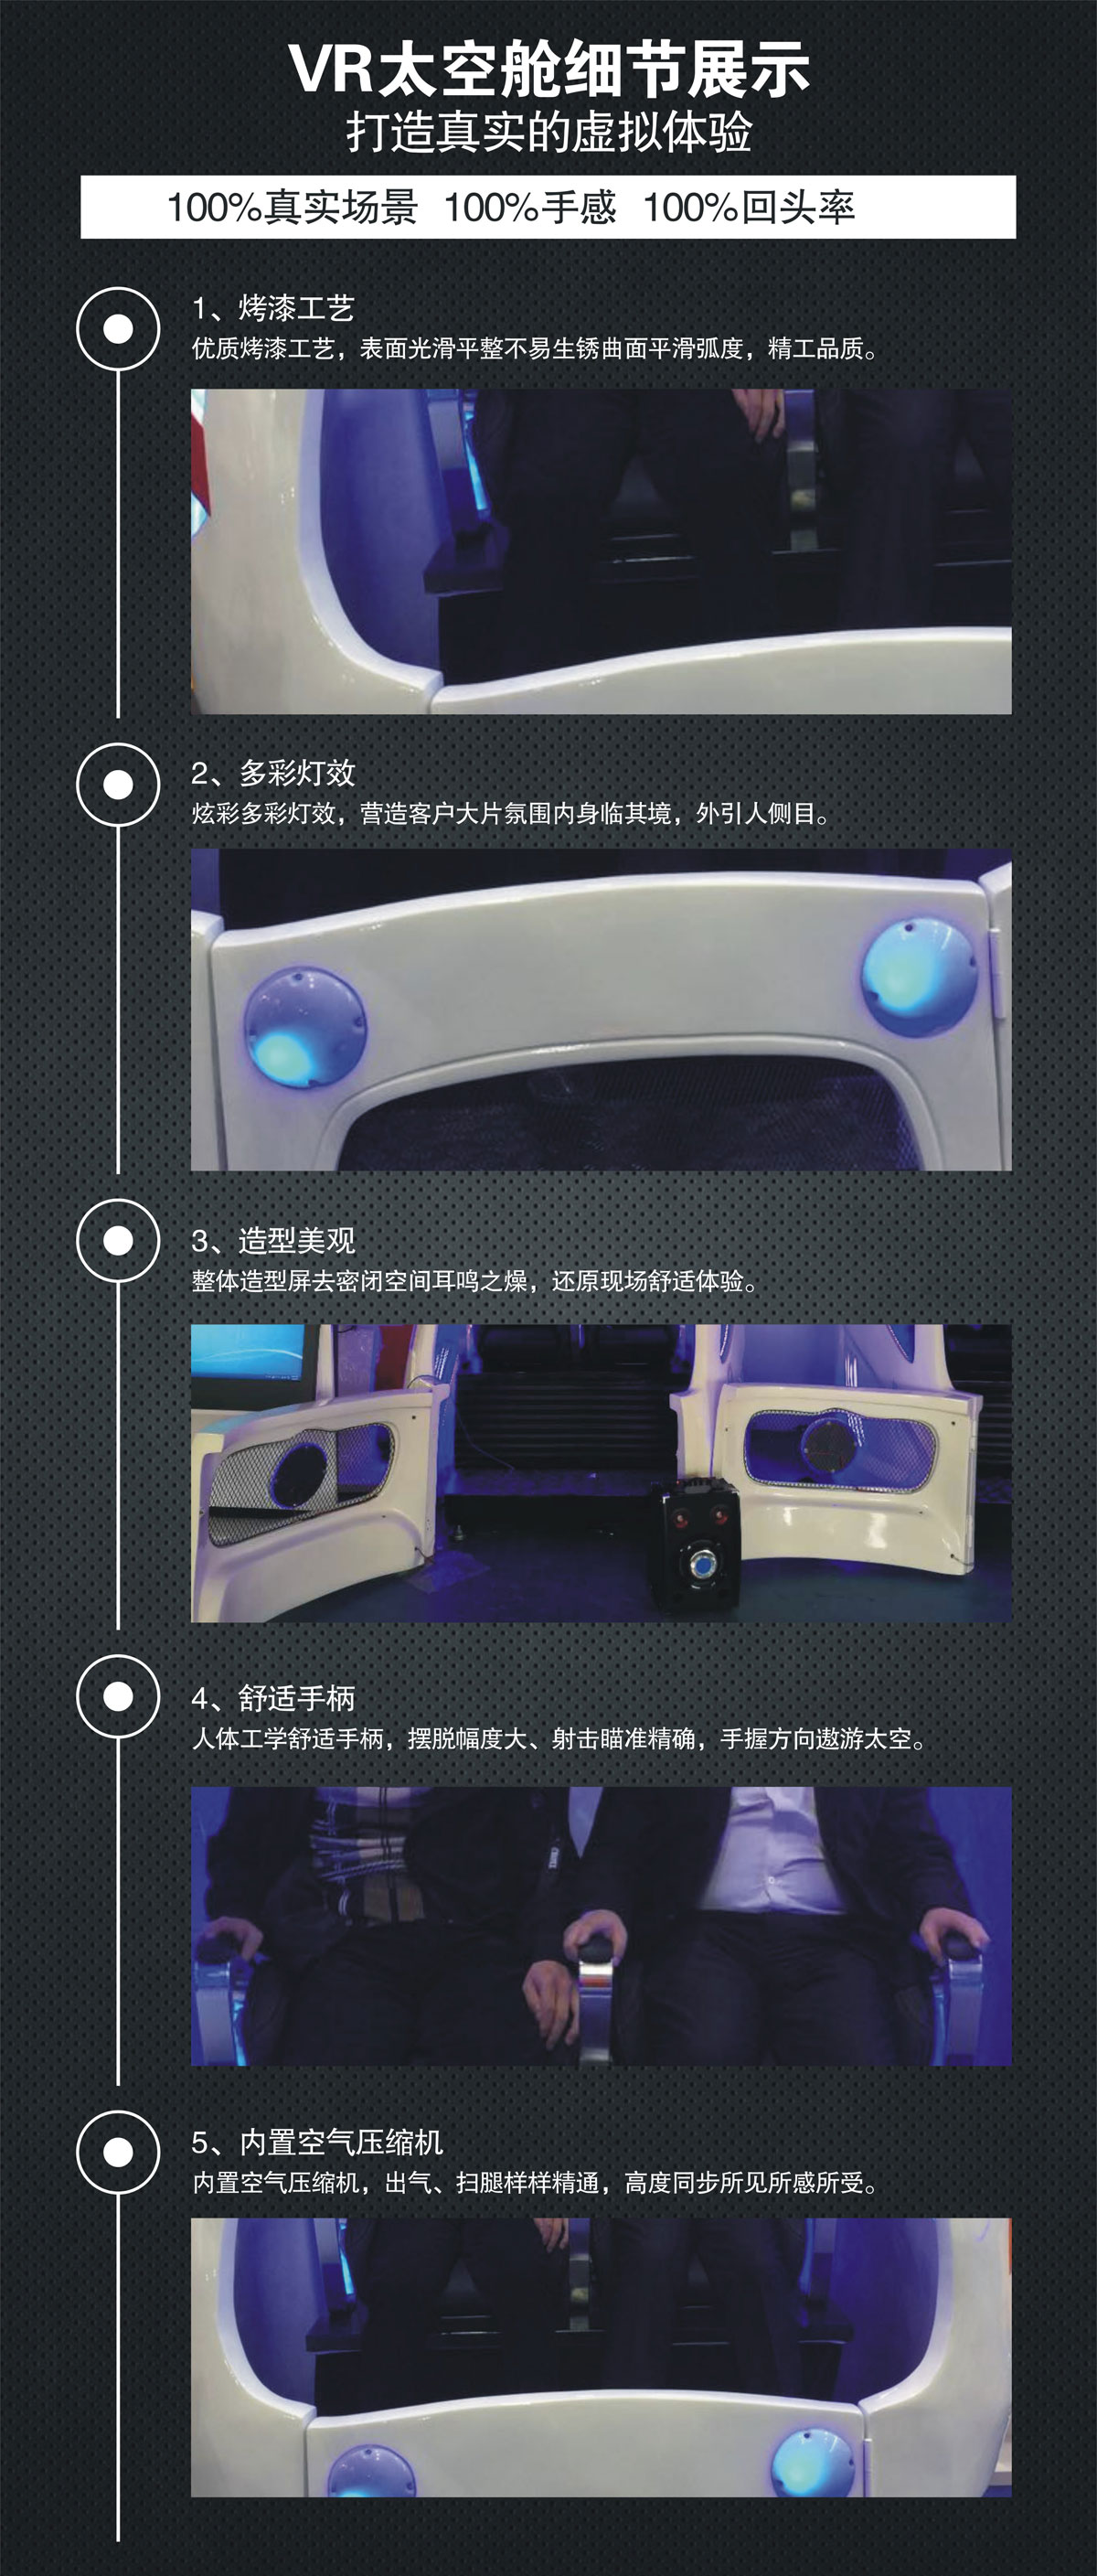 动感影院VR太空舱细节展示.jpg